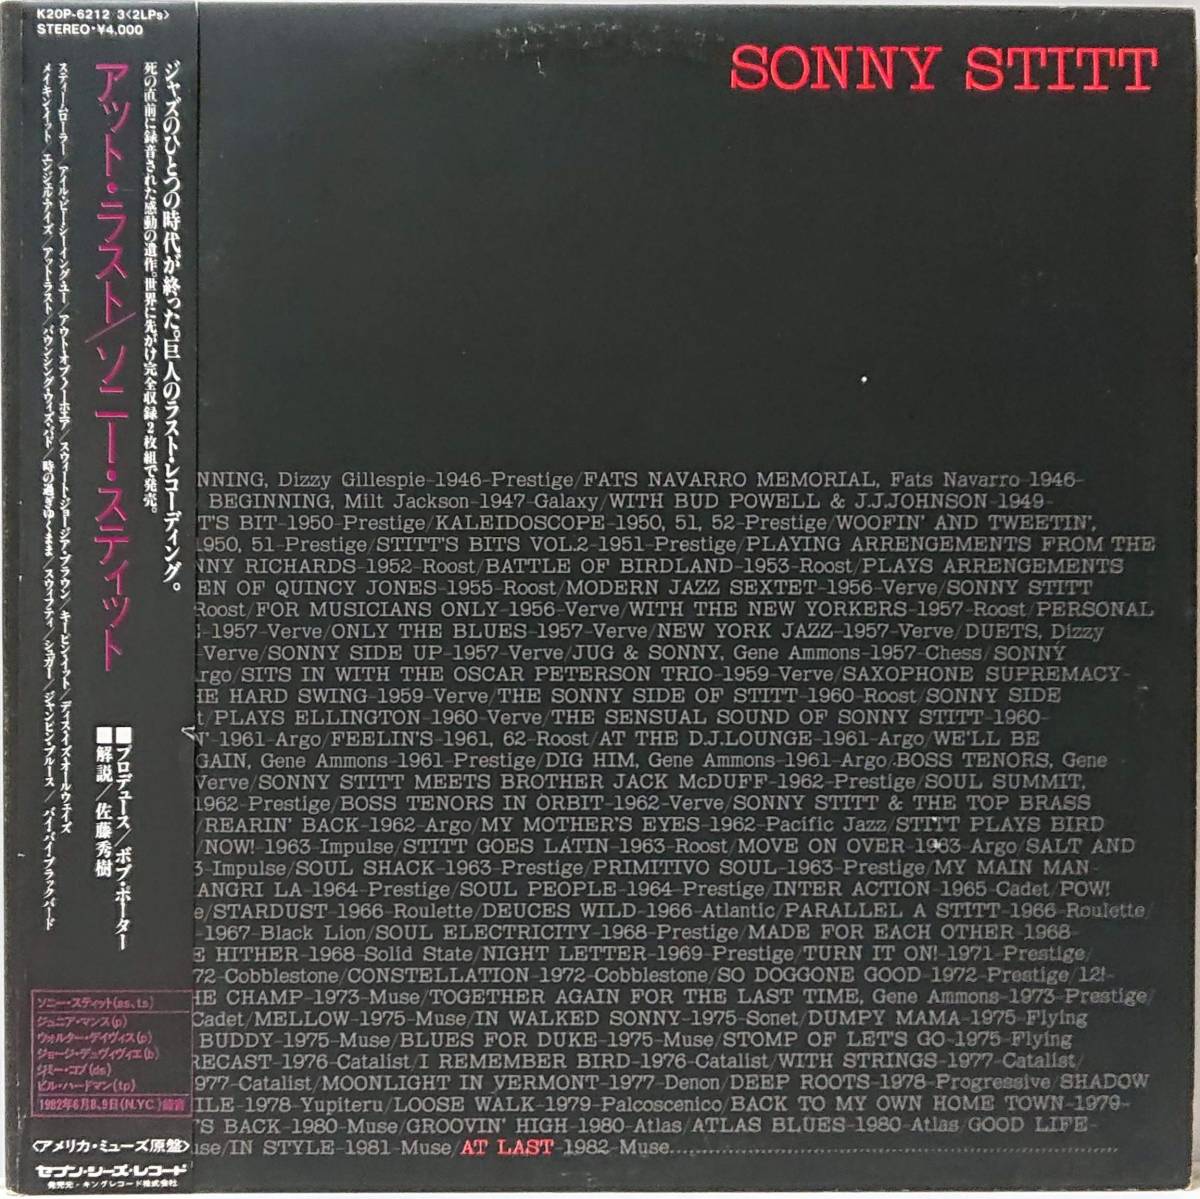 SONNY STITT : AT LAST ソニー・スティット アット・ラスト 見本盤 帯付き 国内盤 中古アナログLPレコード盤 1982年 K20P-6212/3 M2KDO1263_画像5